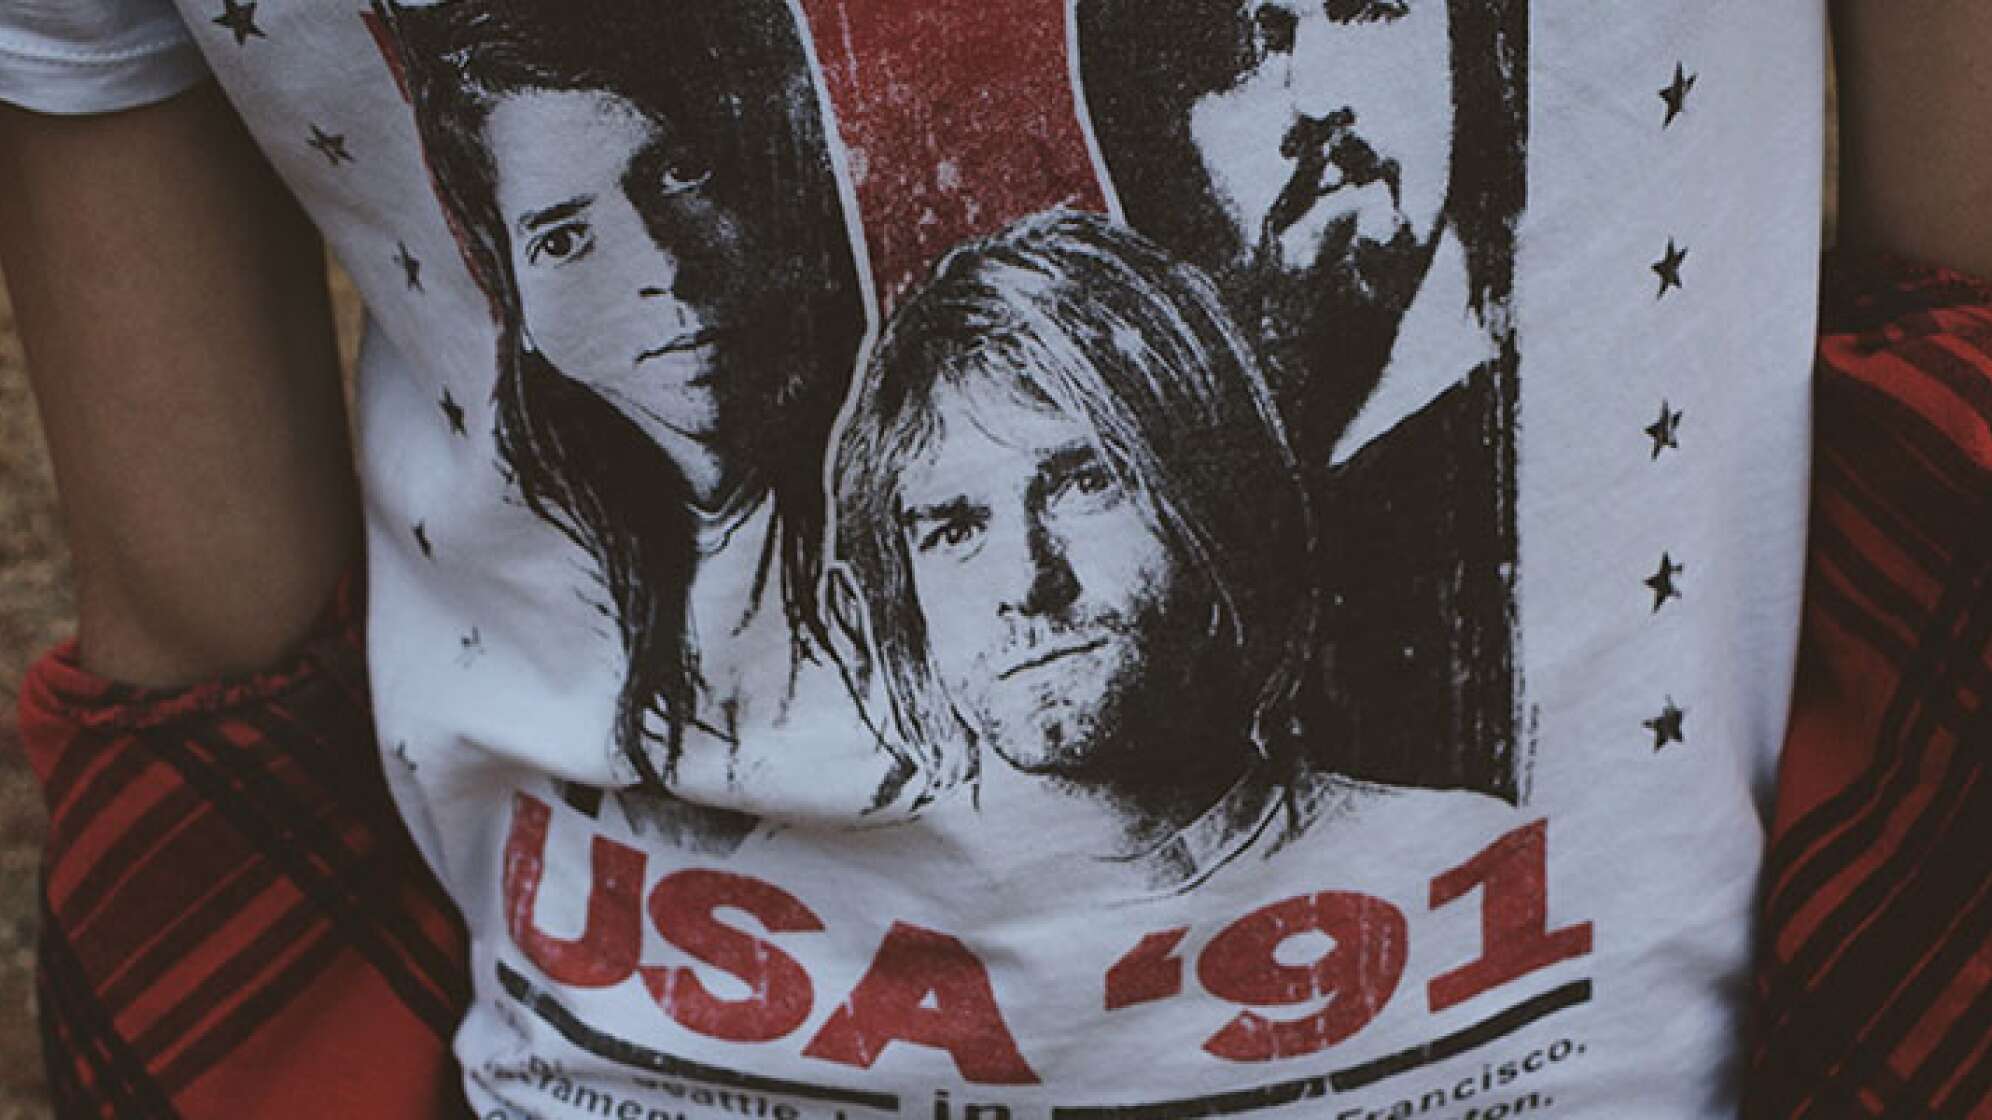 Bild eines Tshirts mit Nirvana Aufdruck